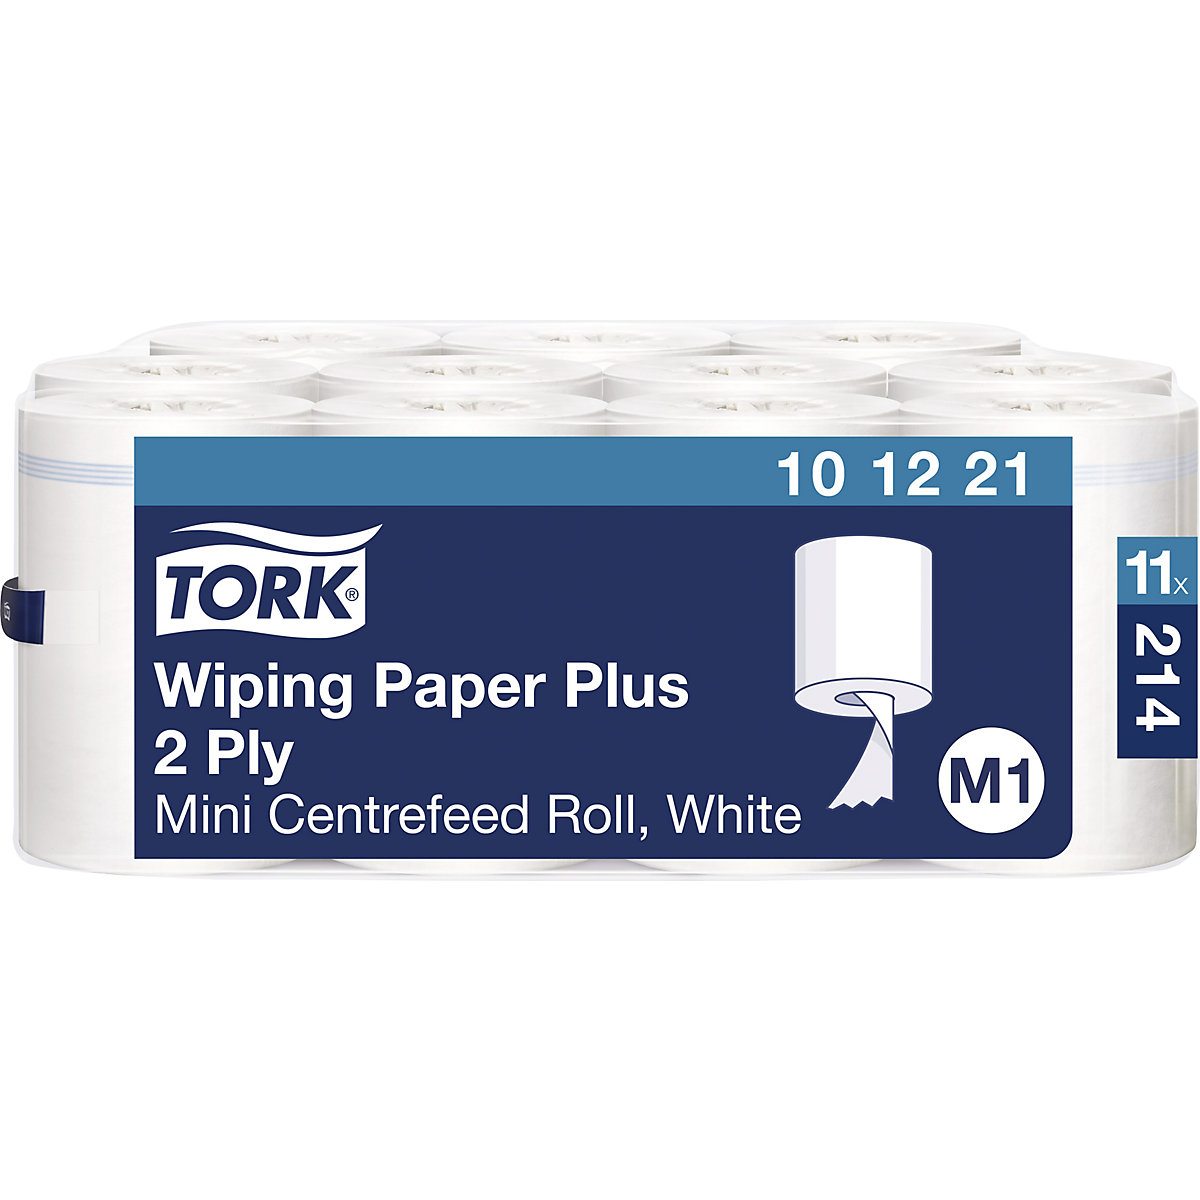 Mocne uniwersalne ściereczki papierowe Mini, centralne dozowanie – TORK